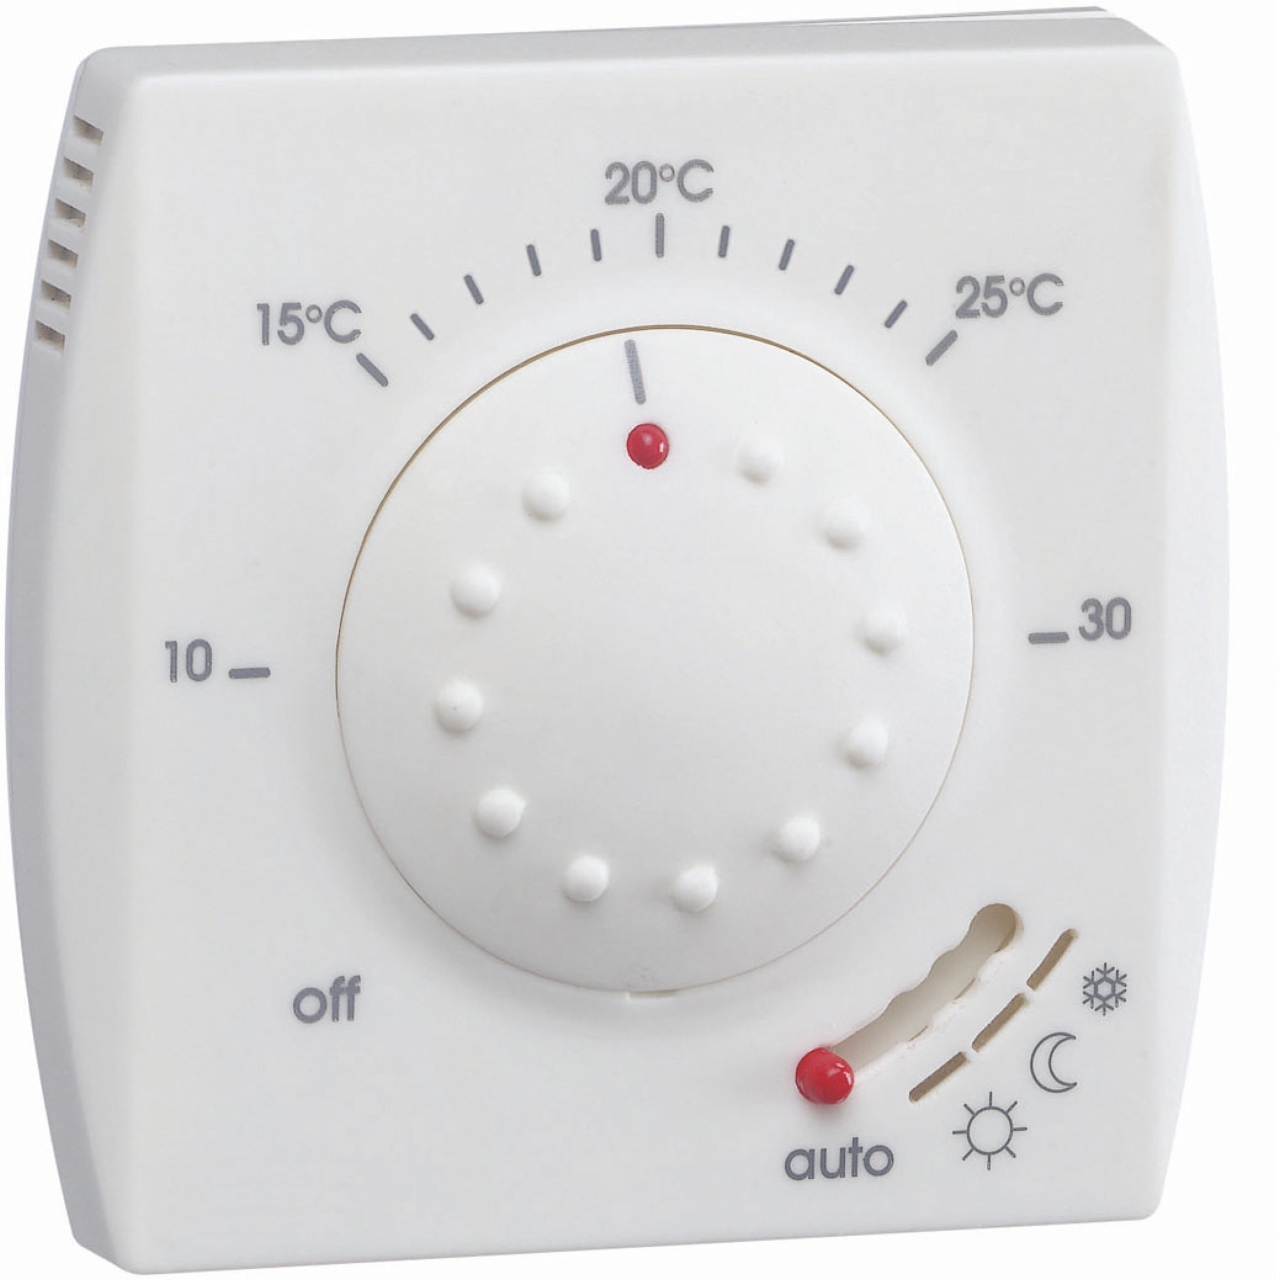 Thermostat - Fil Pilote - Semi encastré - Hager 25113 - 221,..